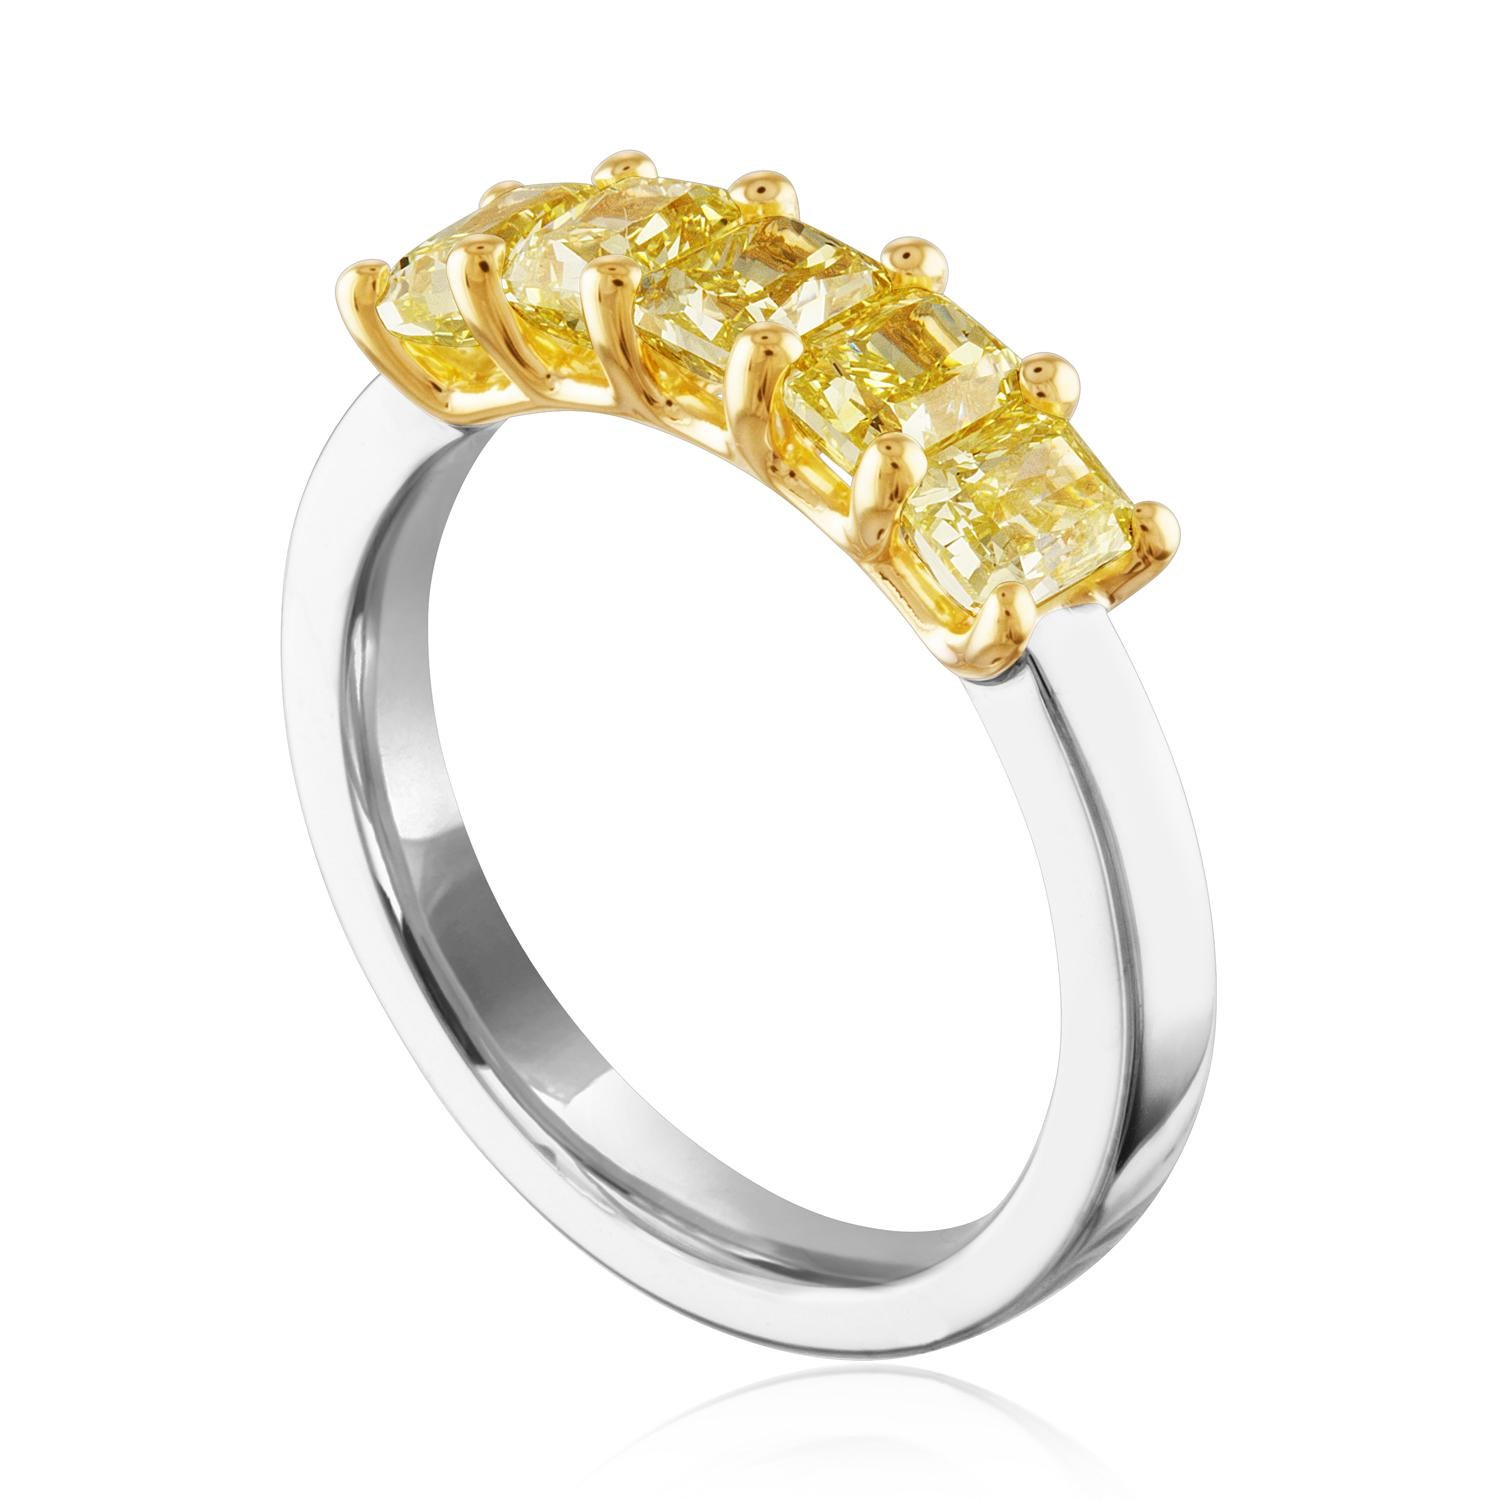 Sehr schöne Diamant 5 Stein Halb Band Ring
Der Ring ist 18K Gelbgold & PLT 950
Es sind 5 gelbe Diamanten im Radiant-Schliff mit Zacken besetzt.
Es gibt 1,70 Karat in Diamanten VS
Der Ring ist eine Größe 6, sizable.
Das Band ist 5,1 mm breit.
Der